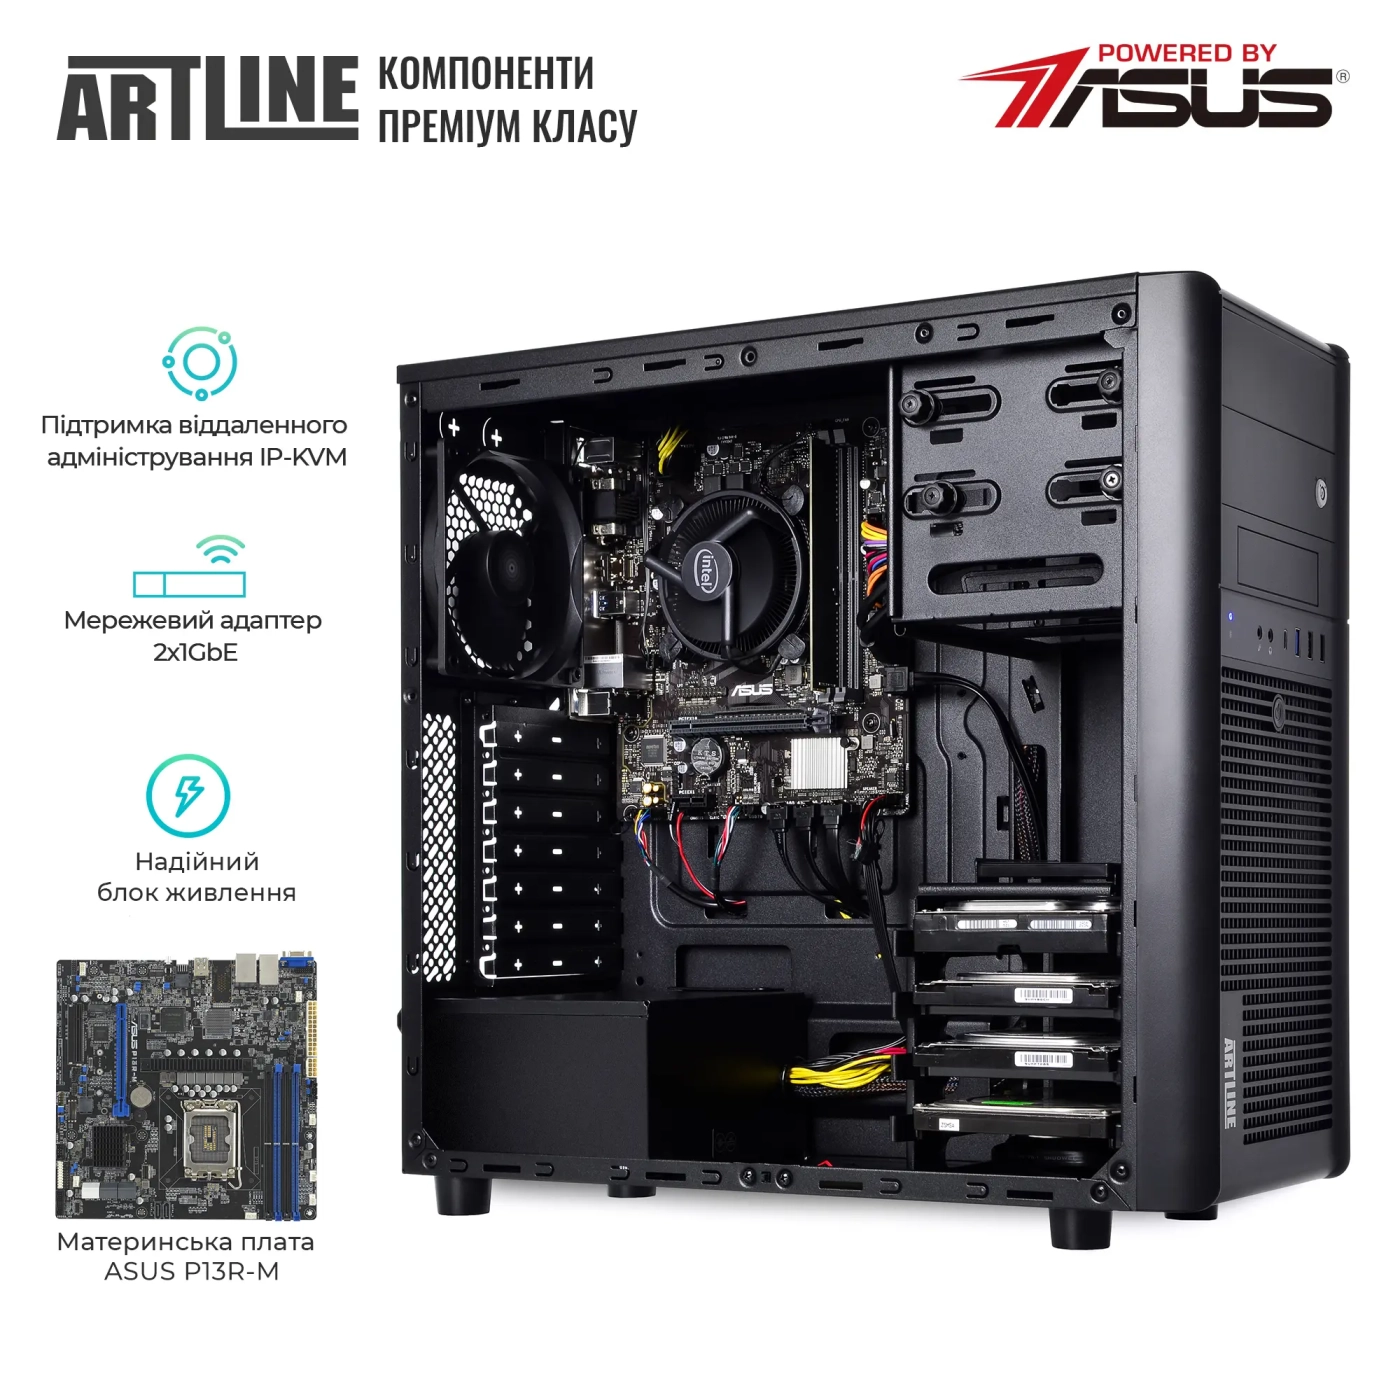 Купить Сервер ARTLINE Business T35 (T35v34) - фото 2